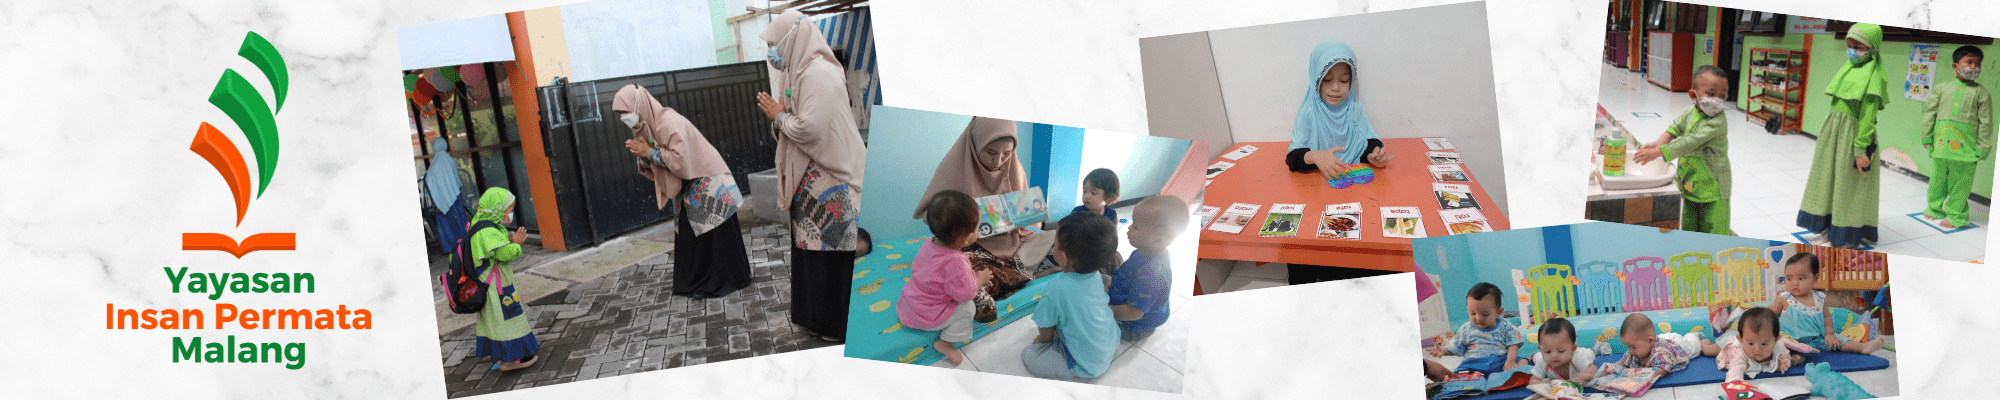 Website Resmi Yayasan | PAUD|SD|SMP  Insan Permata Malang